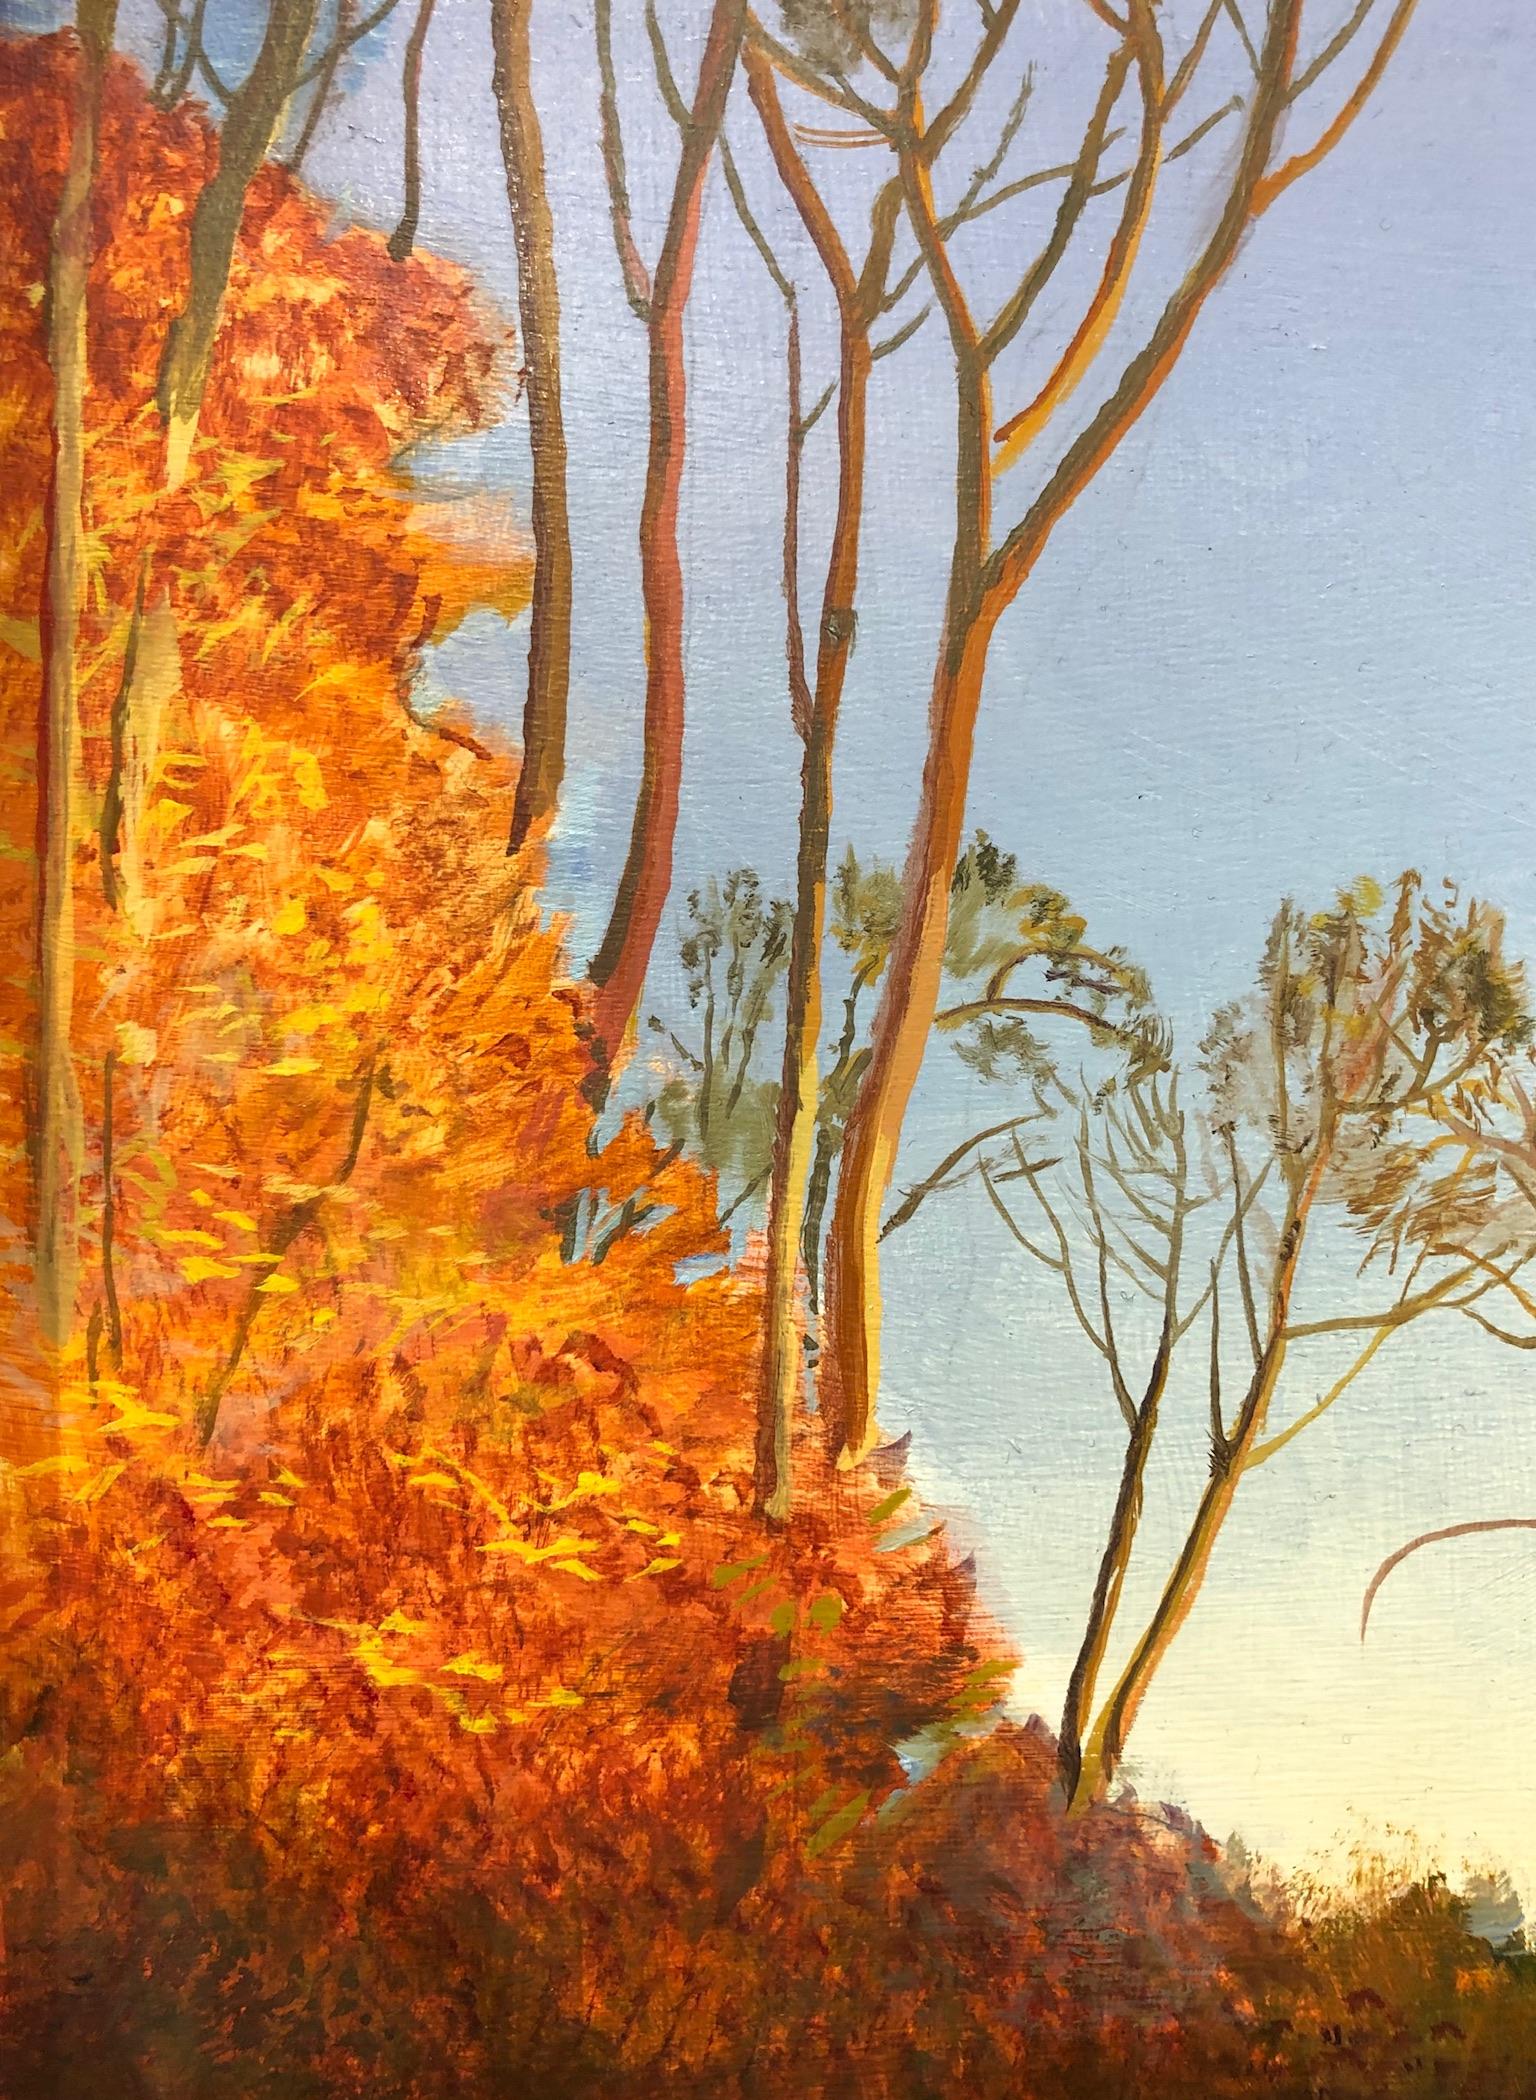 Day's End at Haggerty's Pond - Wald in Sonnenlicht reflektiert im Wasser  (Grau), Landscape Painting, von Art Chartow